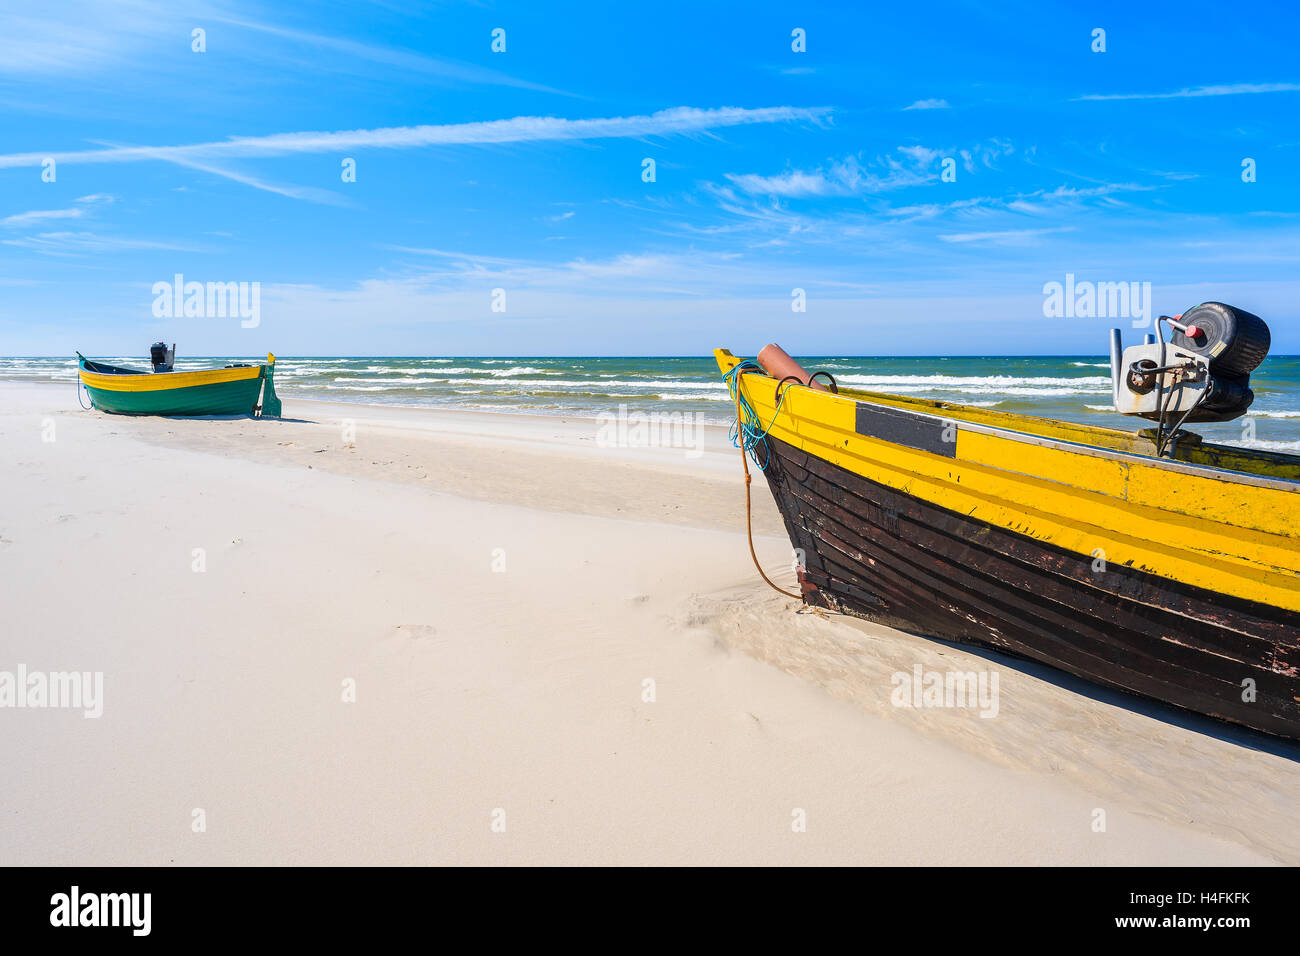 Bateaux de pêche colorés sur la plage de sable de la mer Baltique en Pologne, village Debki Banque D'Images